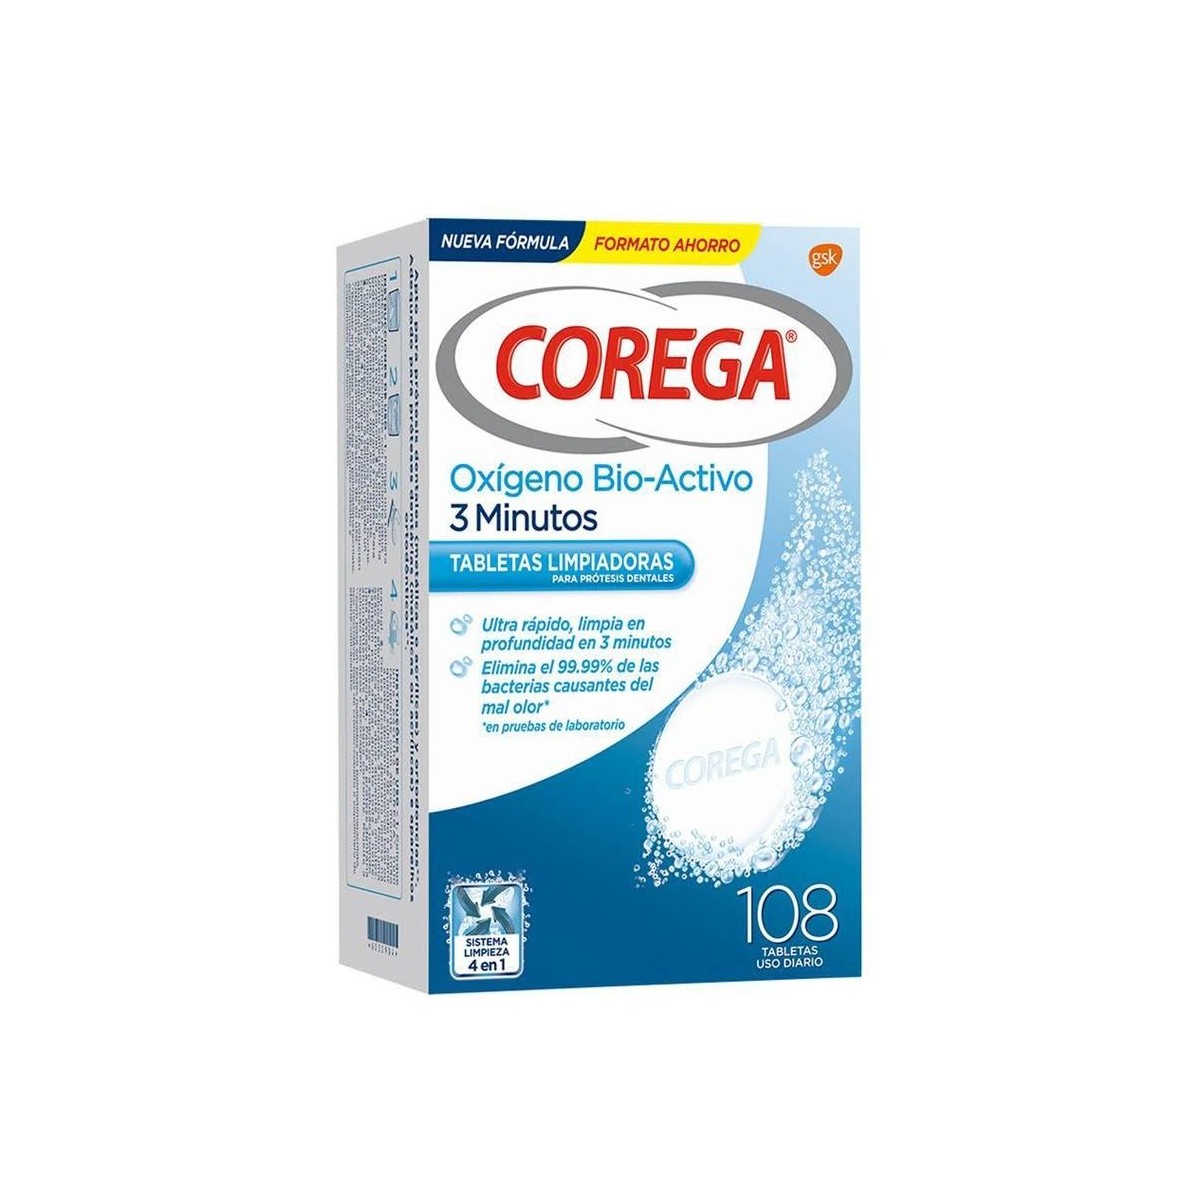 Corega Oxigeno Bio-Activo 108 tabletas